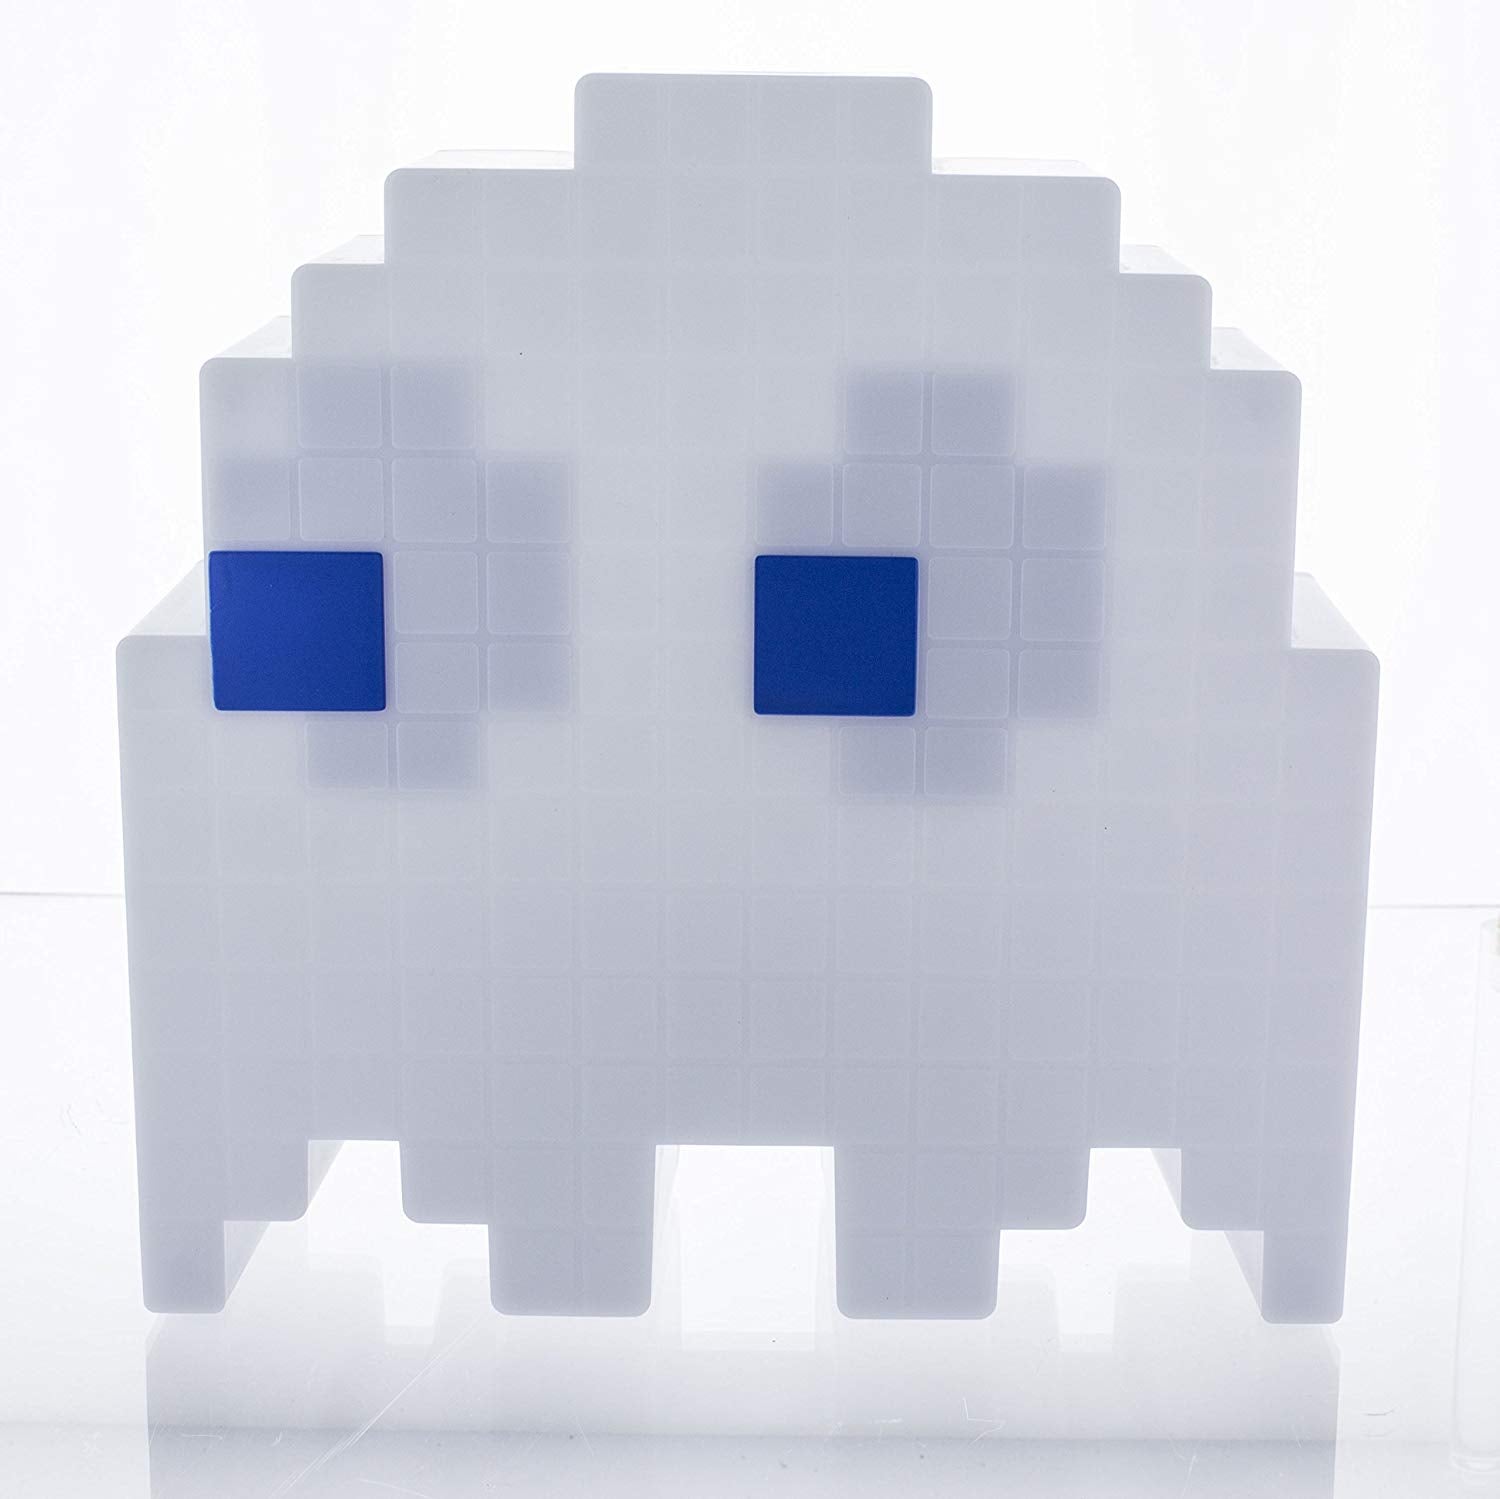 Lampada - Fantasma di Pac-Man - 16 colori USB 3D